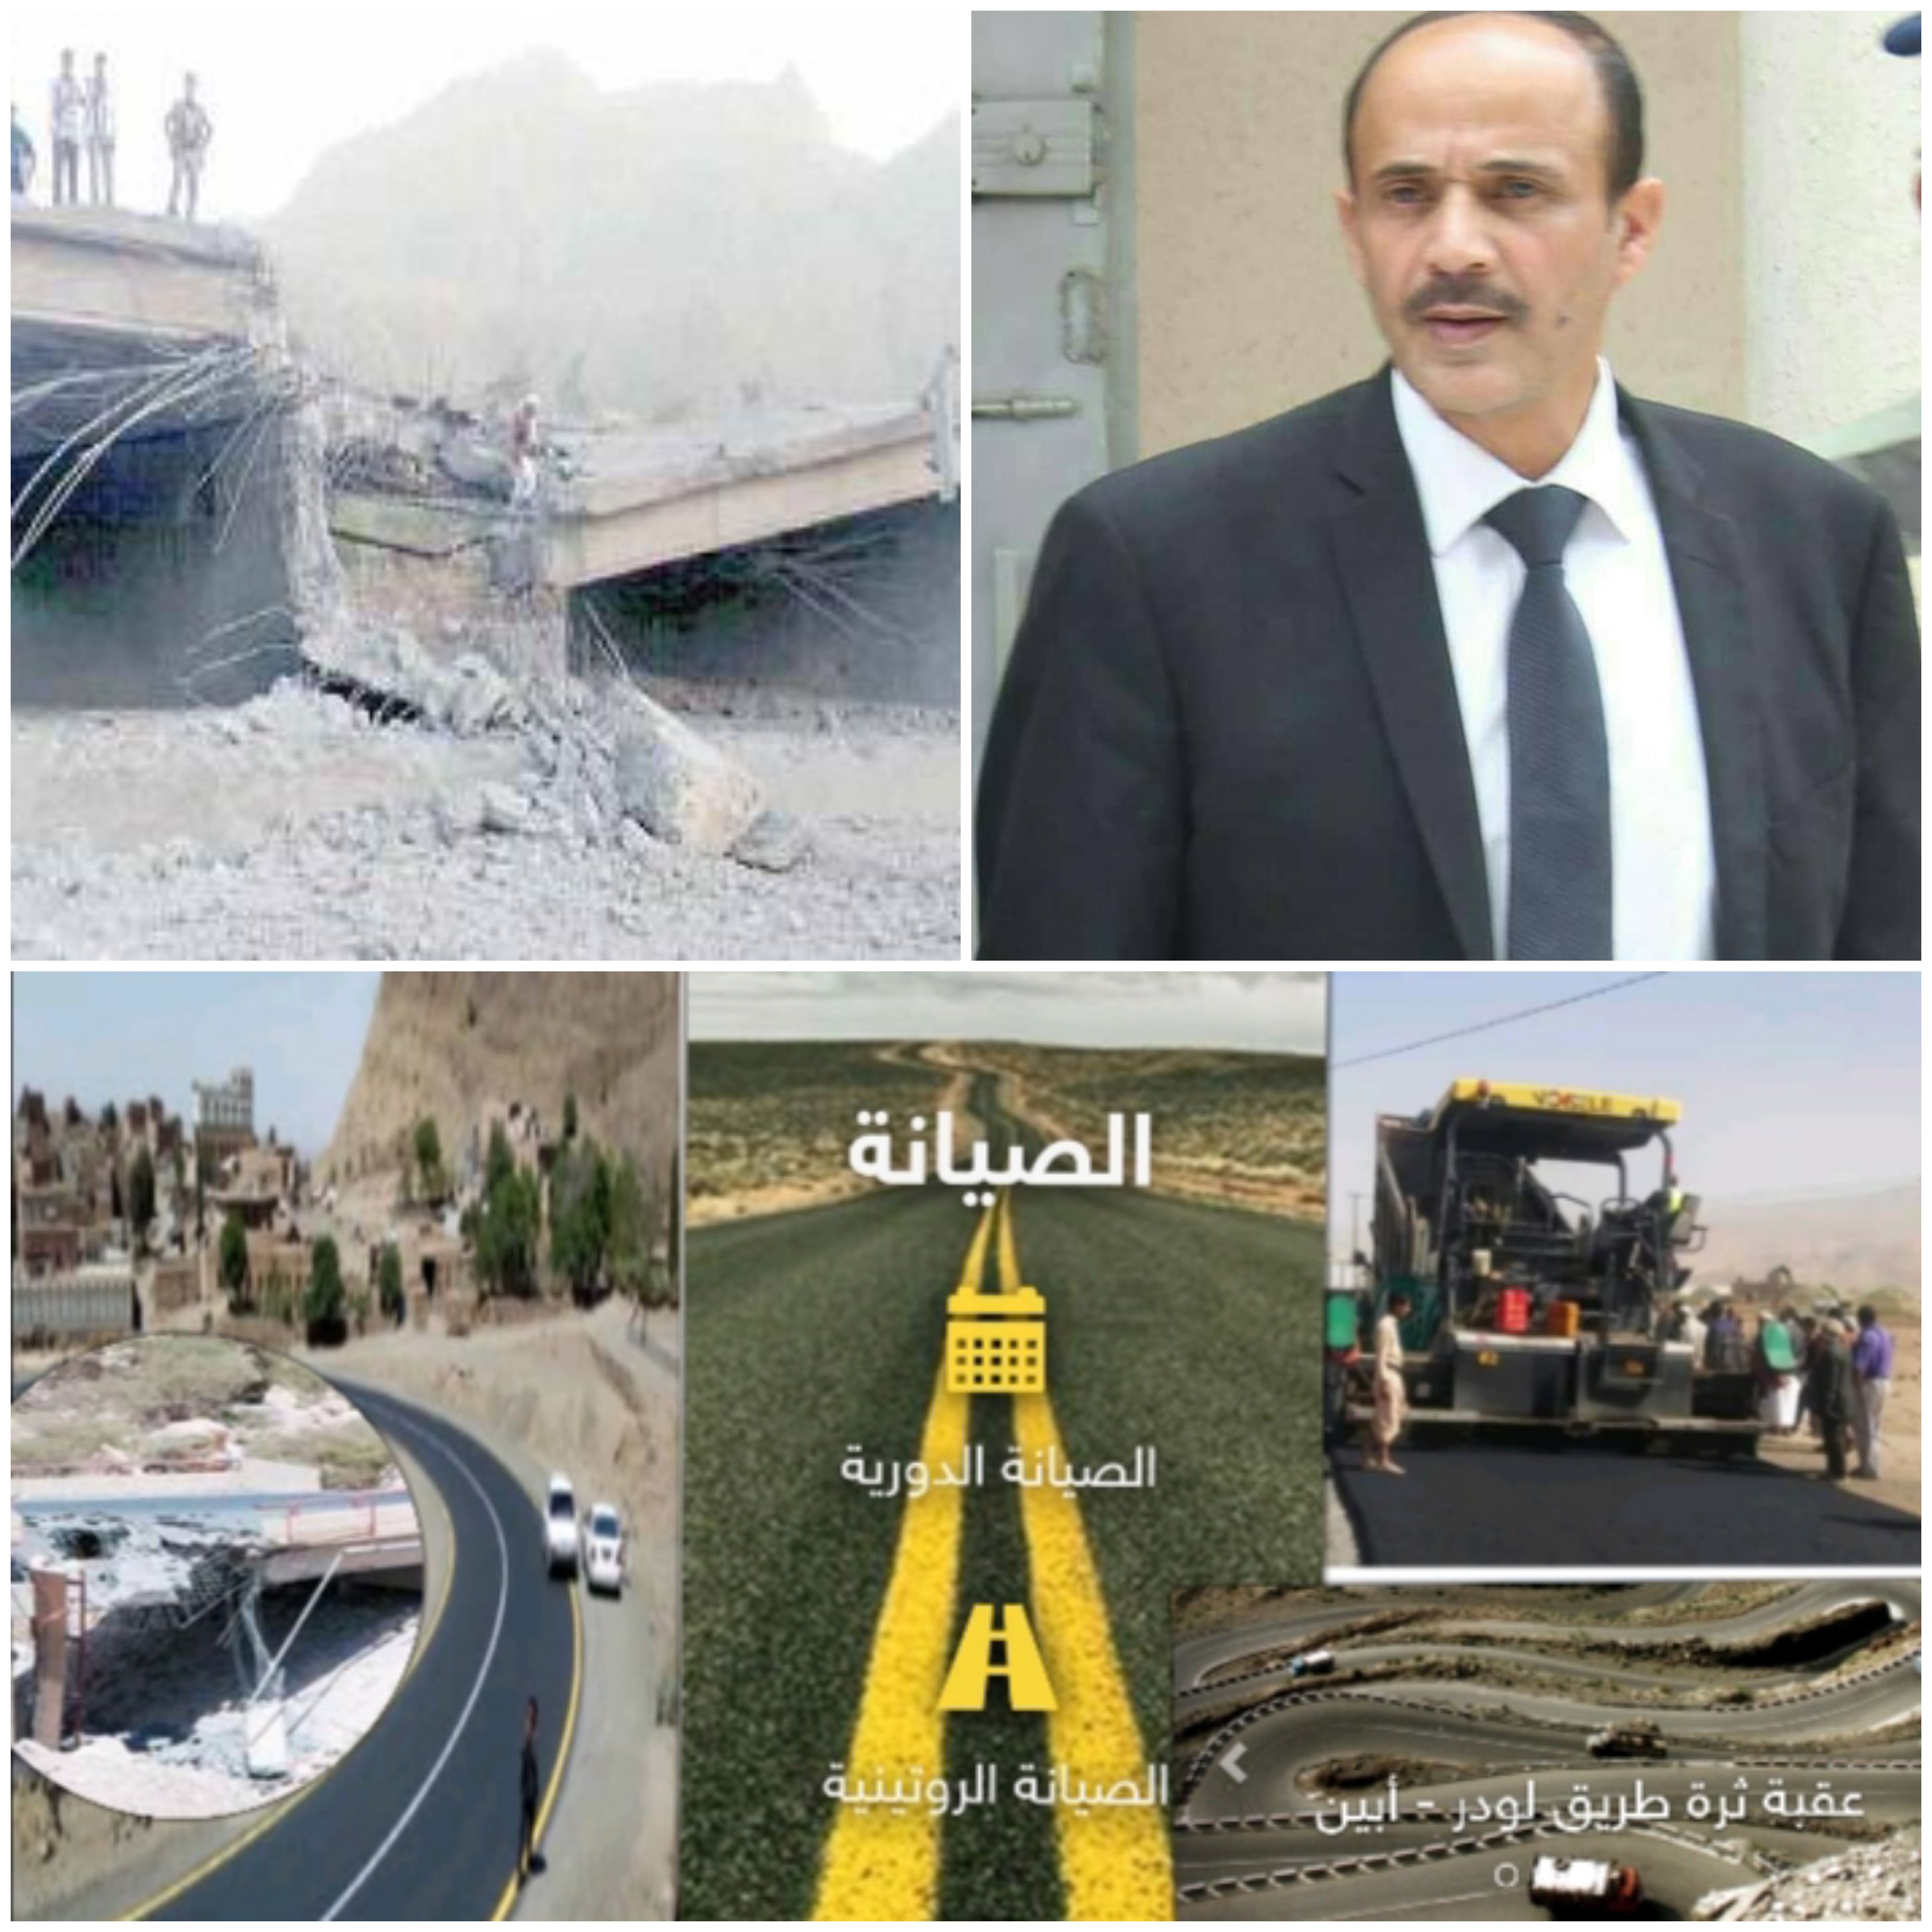 وزيرالأشغال العامةوالطرق استطاعت الوزارة انجاز العديد من المشاريع وصيانة الطرق والجسور التي تعرضت للقصف من قبل دول التحالف